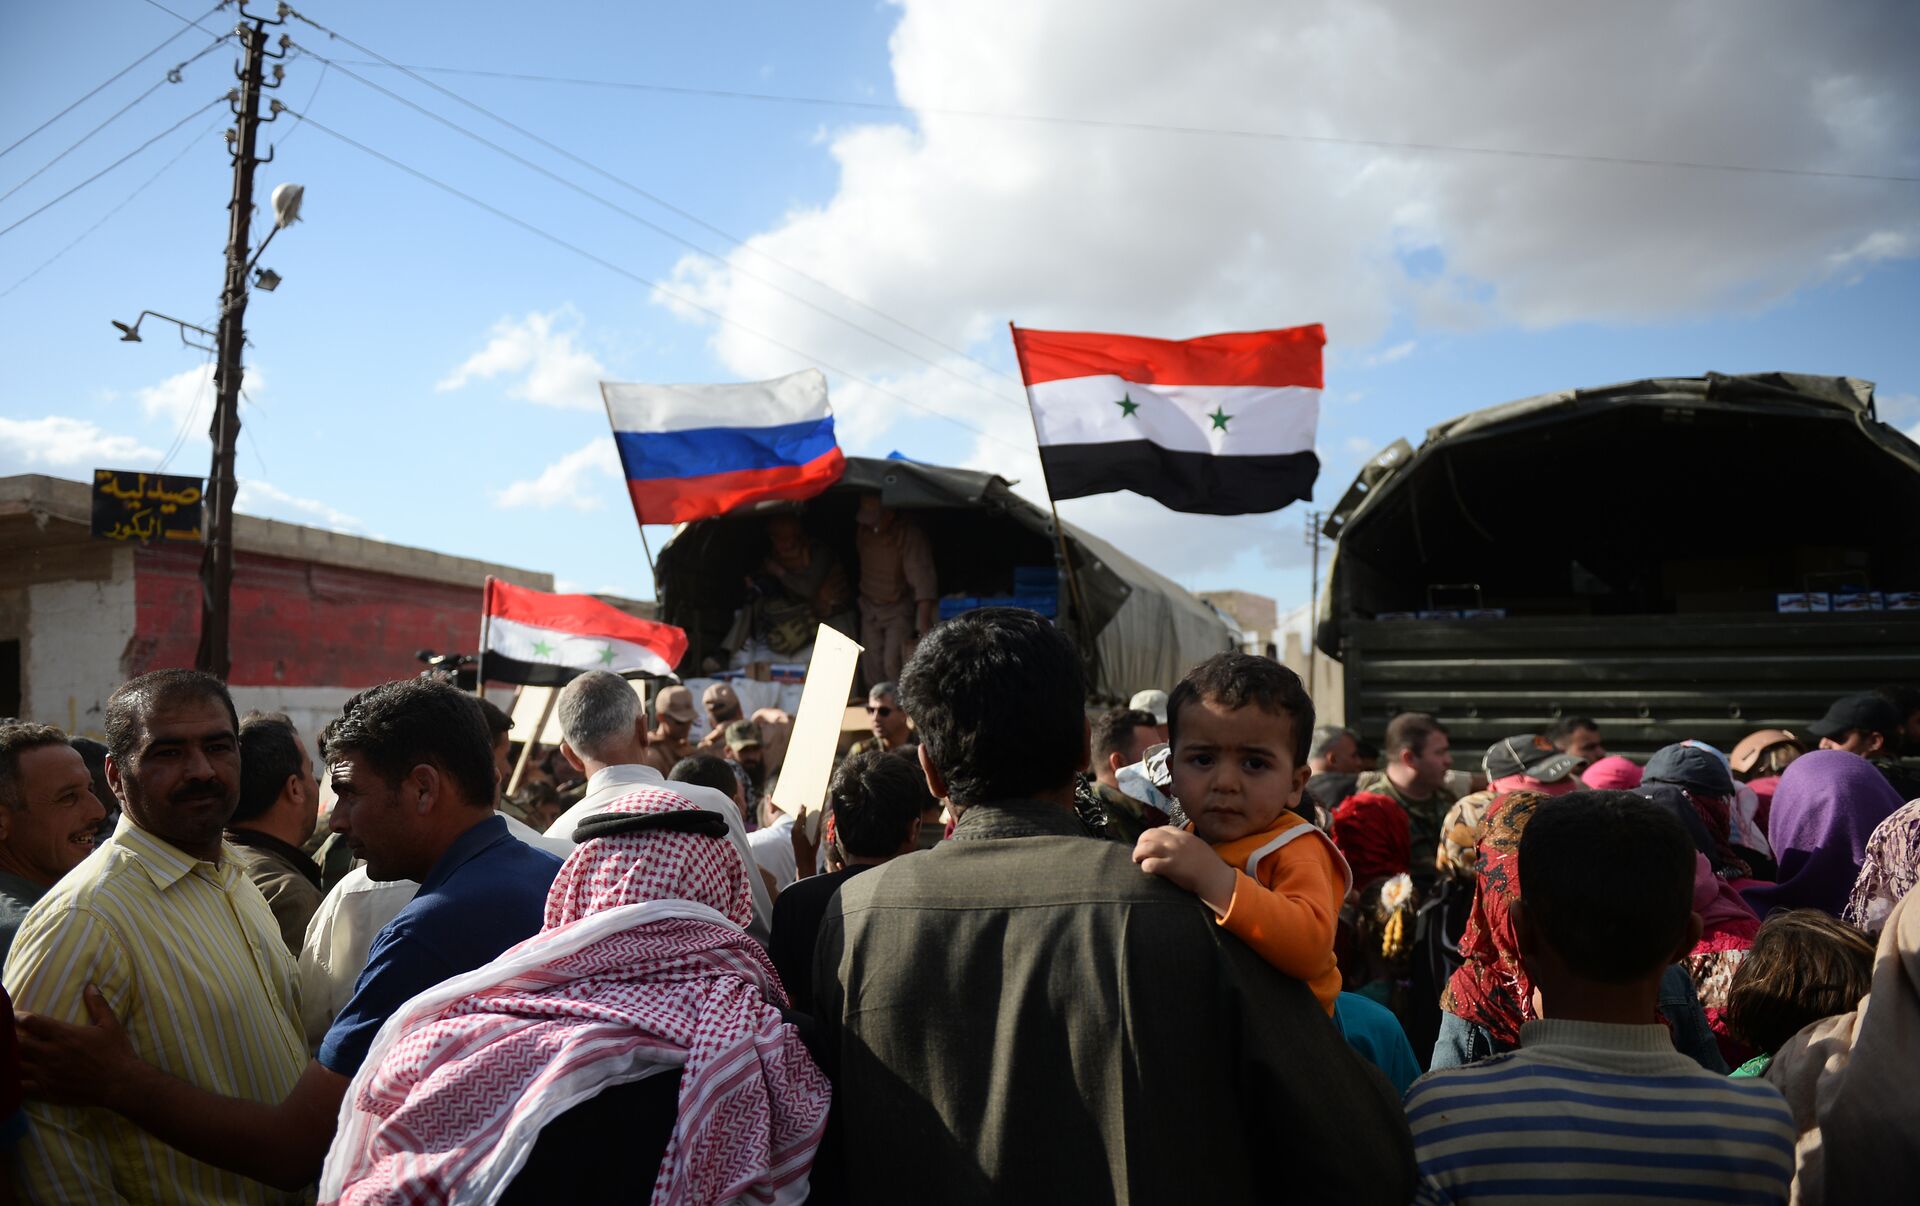 Россия помогает миру. Гуманитарная помощь сирийцам. Помощь России Сирии. Гуманитарная операция в Сирии, 2012-2016 годы Россия.